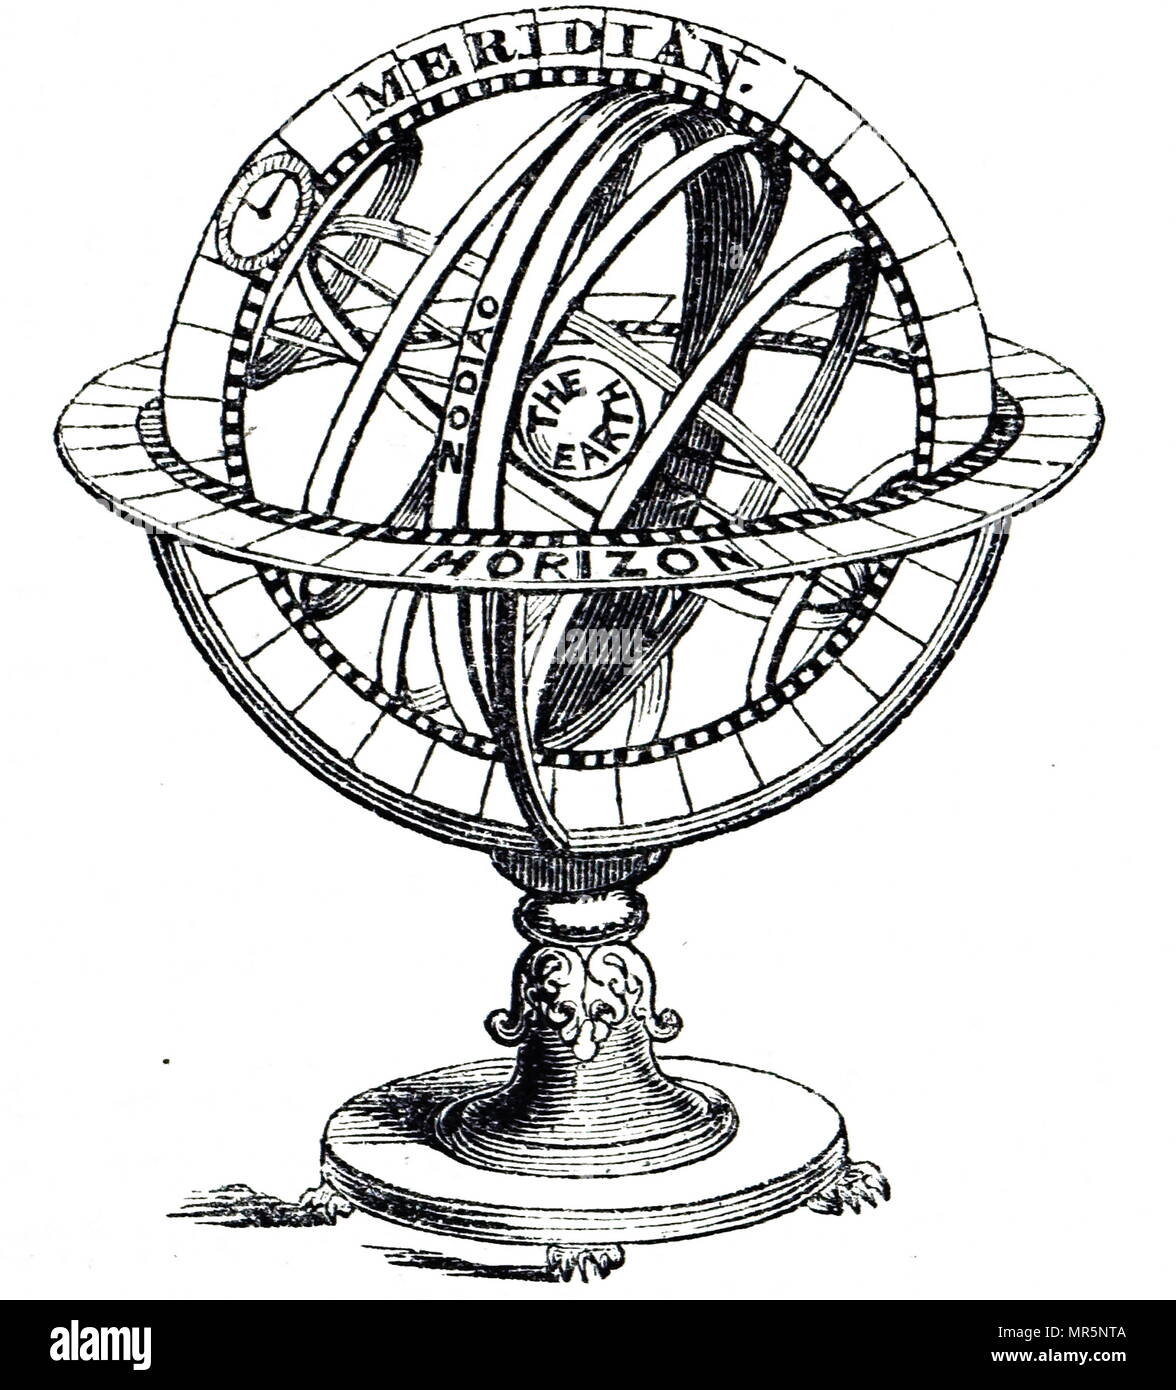 Gravur, das eine Armillarsphäre, ein Modell der Objekte im Himmel (auf die Himmelssphäre), bestehend aus einem kugelförmigen Rahmen der Ringe, auf der Erde oder Sonne zentriert, dass Linien der himmlischen Längen- und Breitengrad sowie andere astronomisch wichtige Funktionen, wie z. B. die Ekliptik dar. Vom 19. Jahrhundert Stockfoto